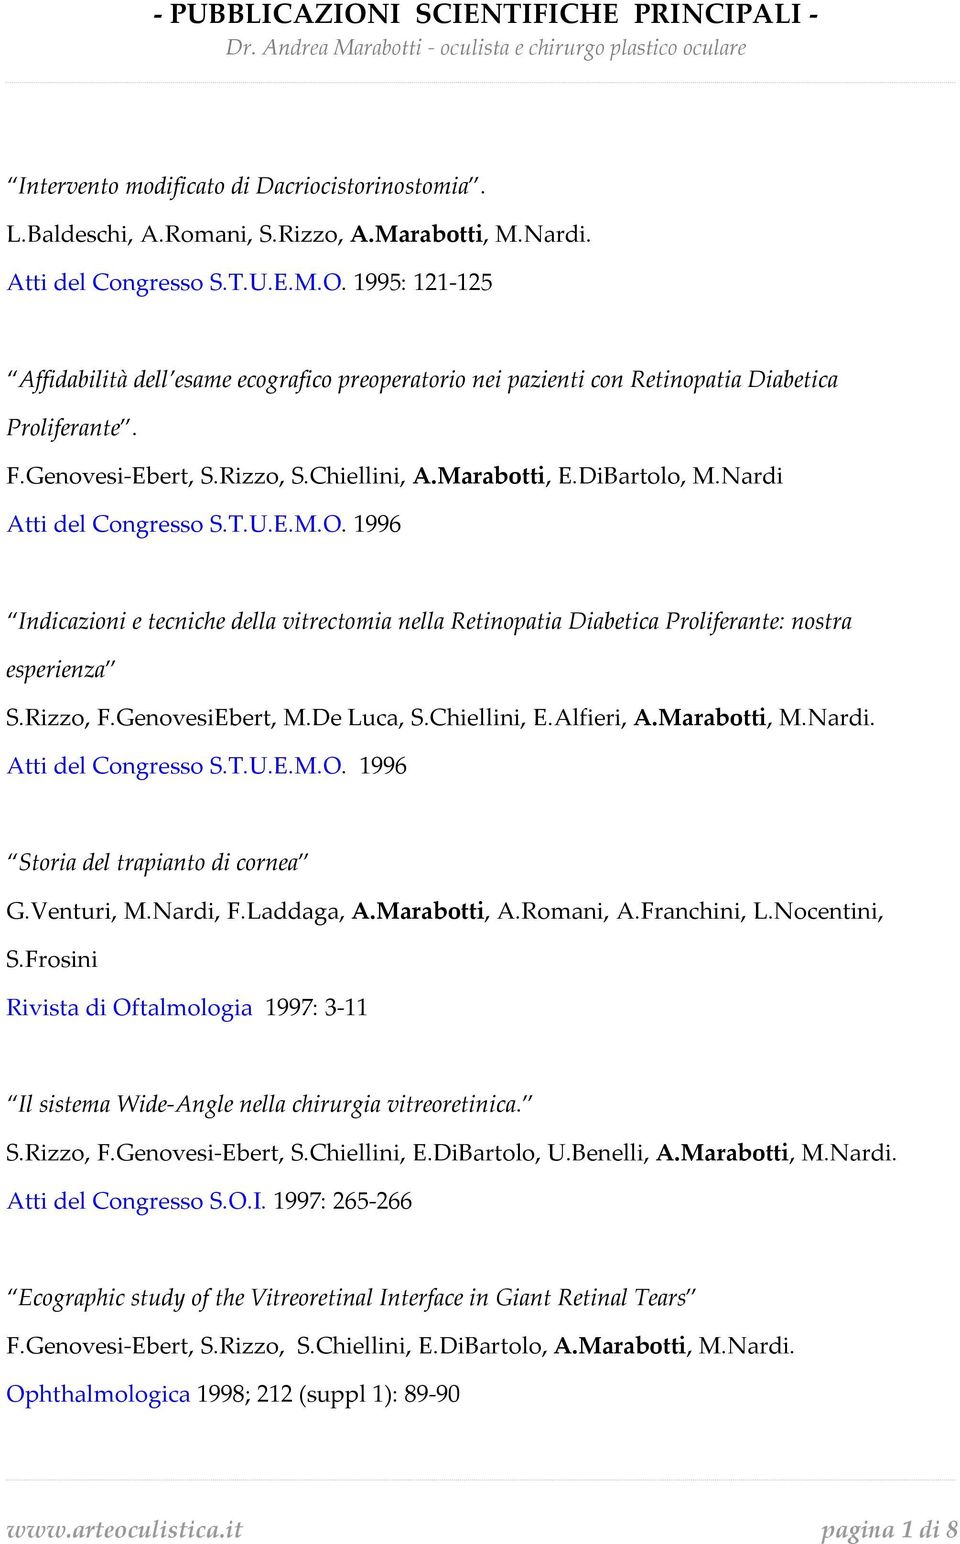 Nardi Atti del Congresso S.T.U.E.M.O. 1996 Indicazioni e tecniche della vitrectomia nella Retinopatia Diabetica Proliferante: nostra esperienza S.Rizzo, F.GenovesiEbert, M.De Luca, S.Chiellini, E.